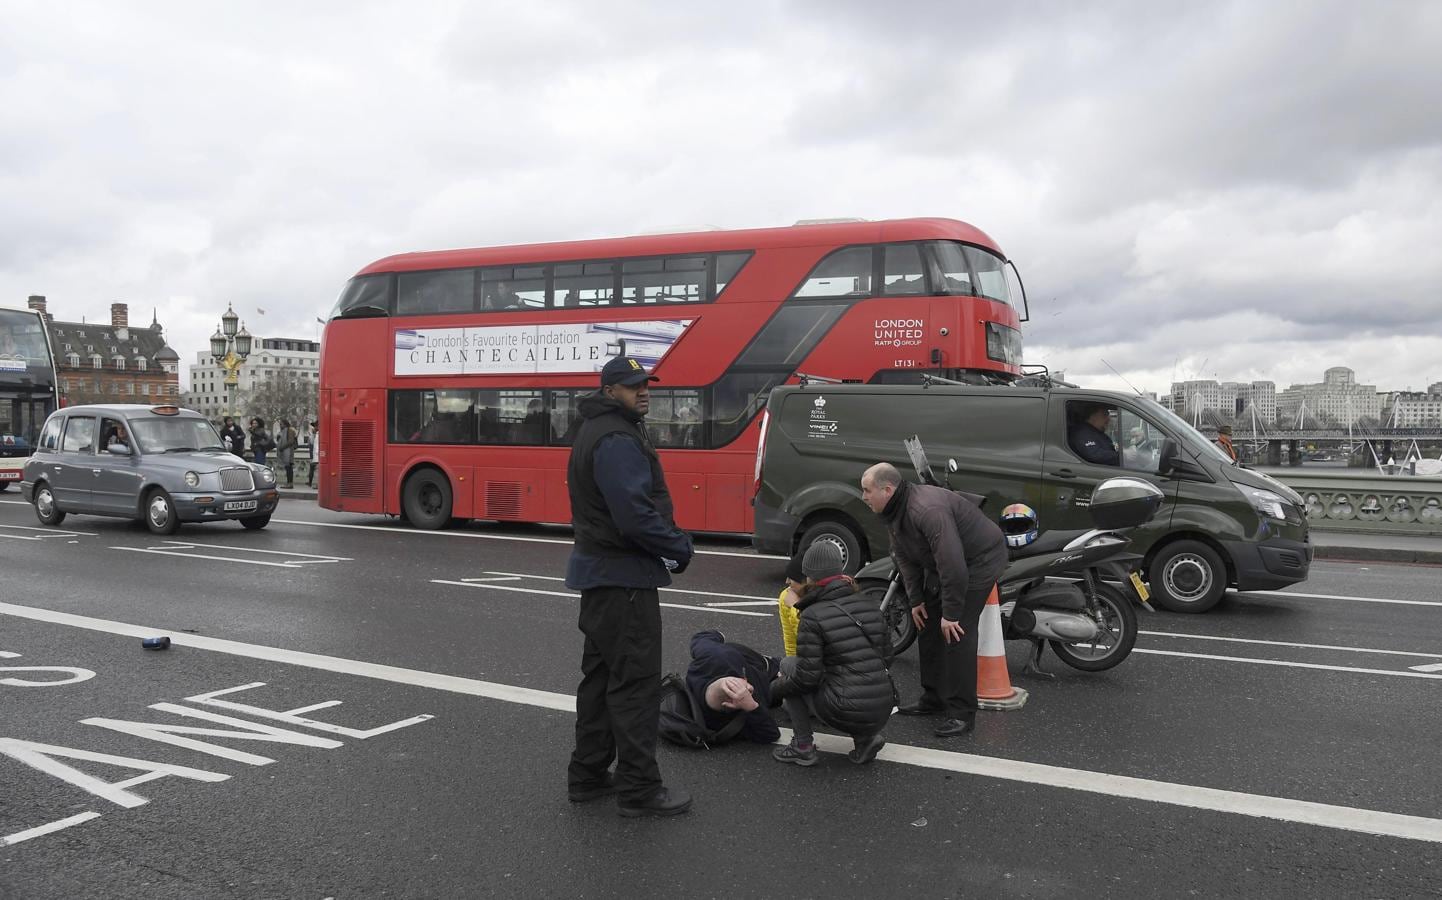 Imágenes tras el ataque en Londres en el puente de Westminster y cerca del Parlamento británico